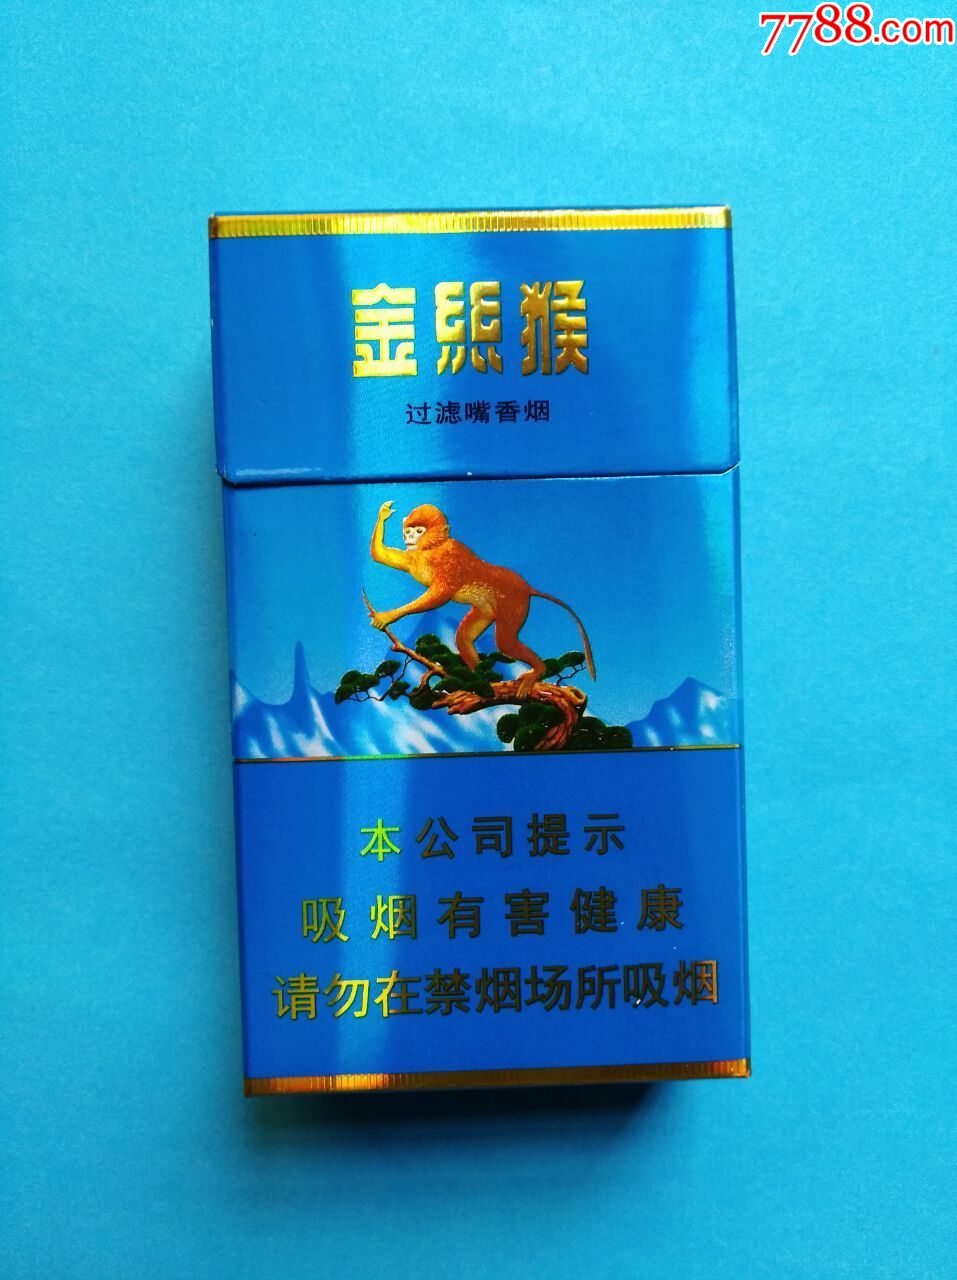 25元金丝猴香烟图片